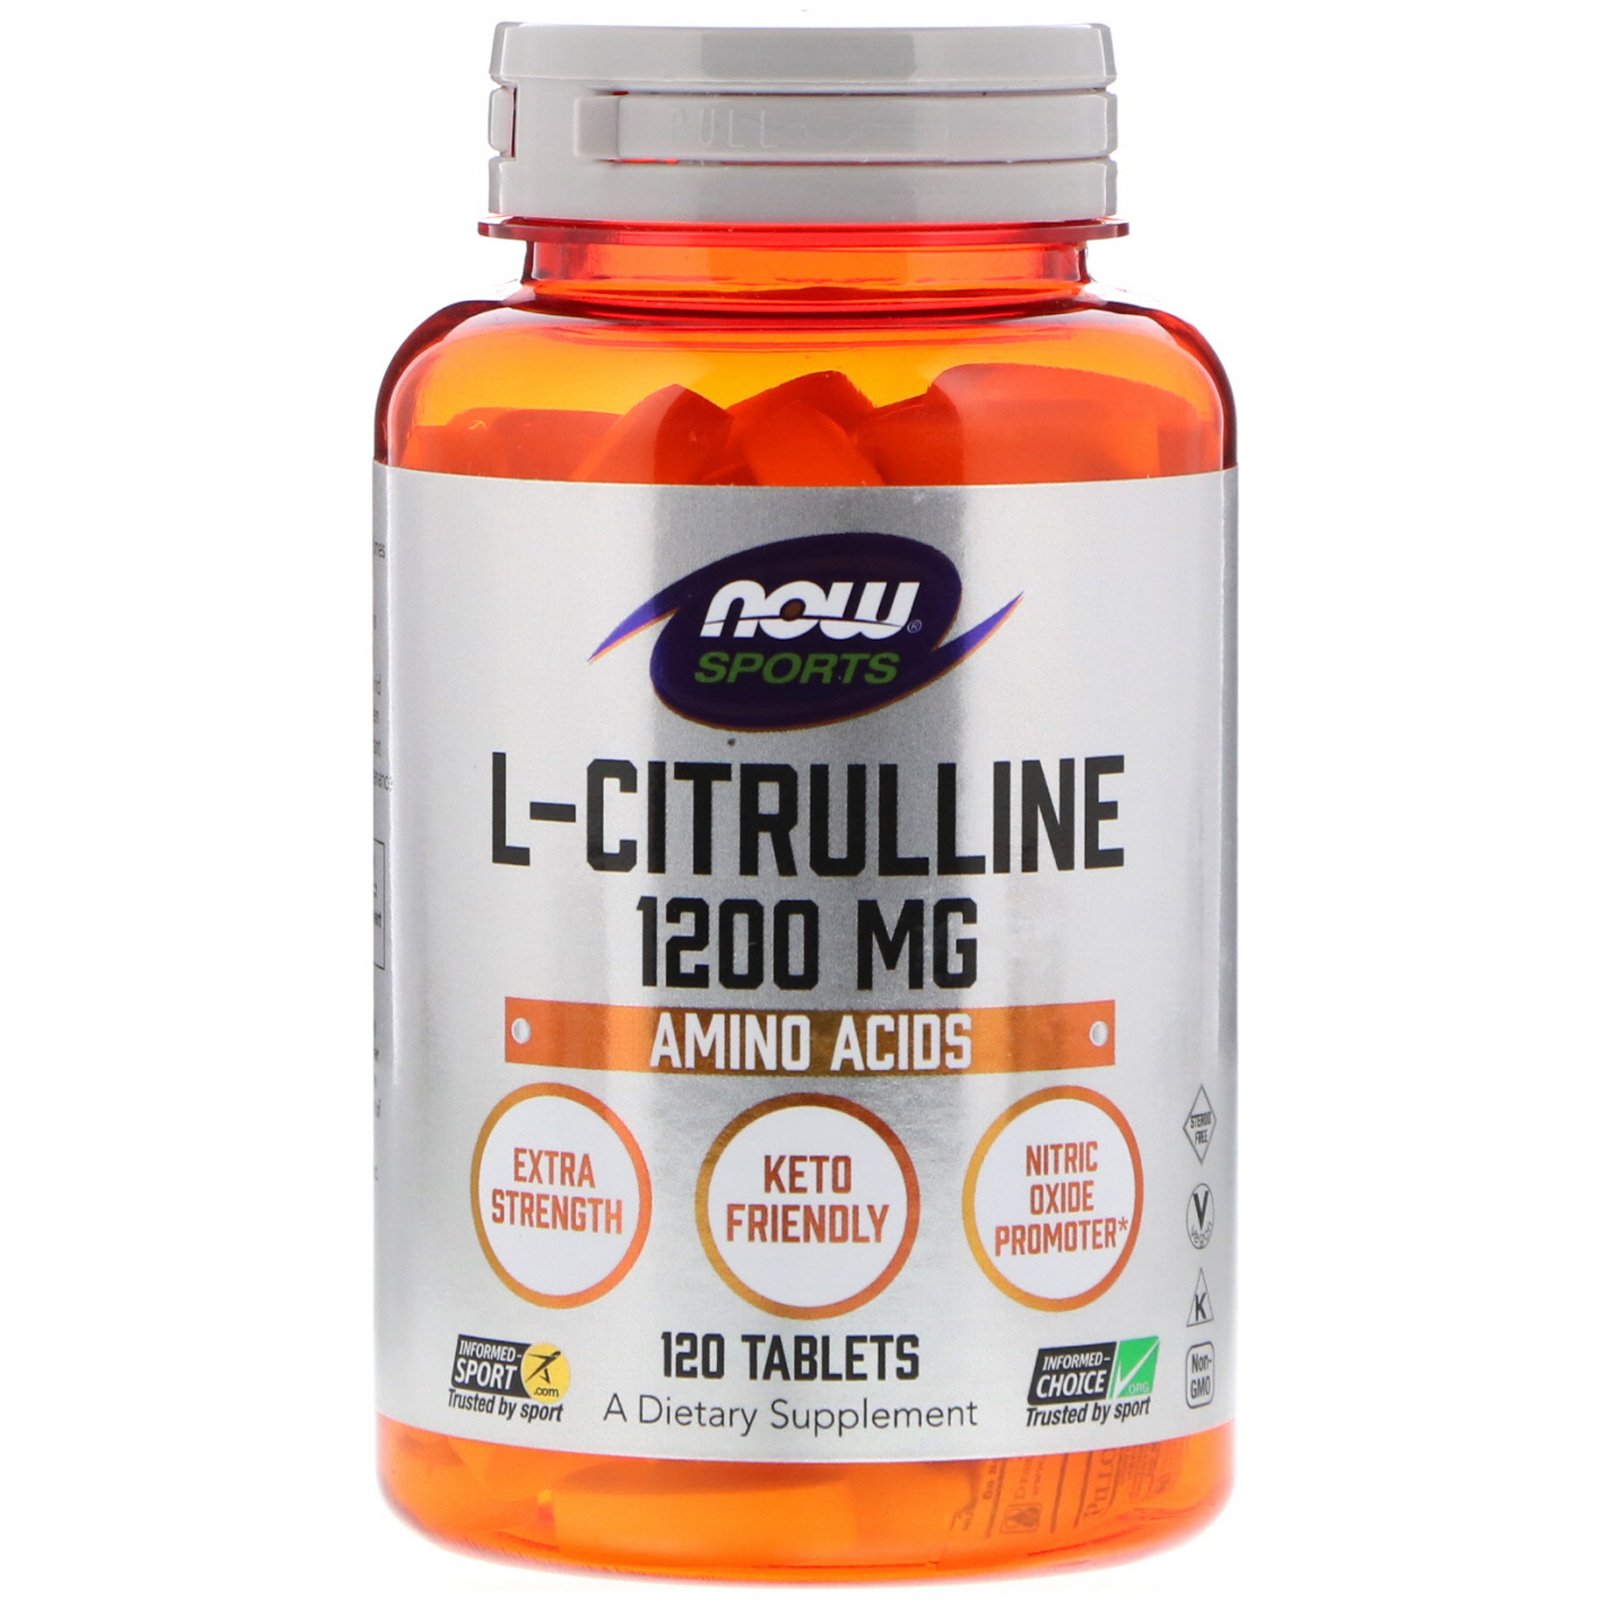 L-Citrulline 1200 mg, 120 pcs, Now. Citrullin. 